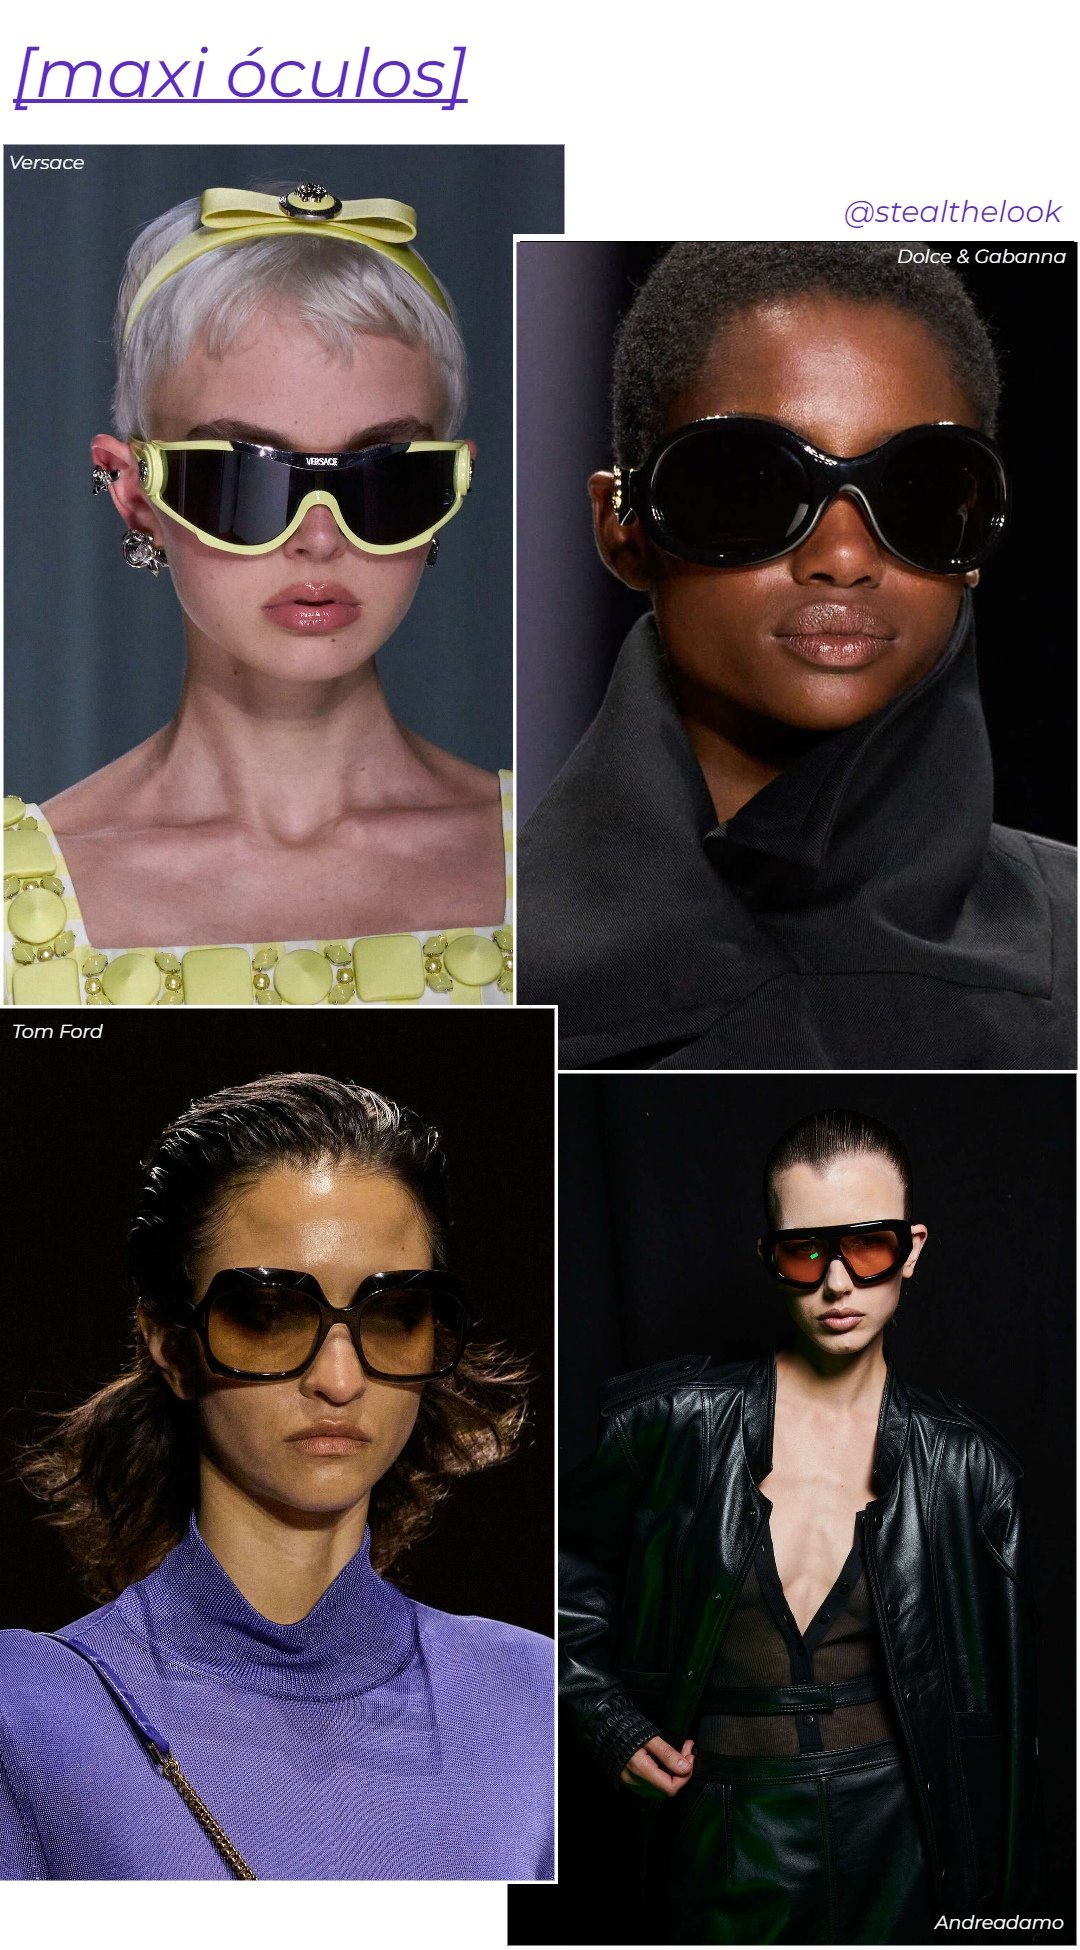 Tom Ford, Dolce & Gabbana, Andreadamo e Versace - roupas diversas - tendências do verão - verão - colagem de imagens - https://stealthelook.com.br